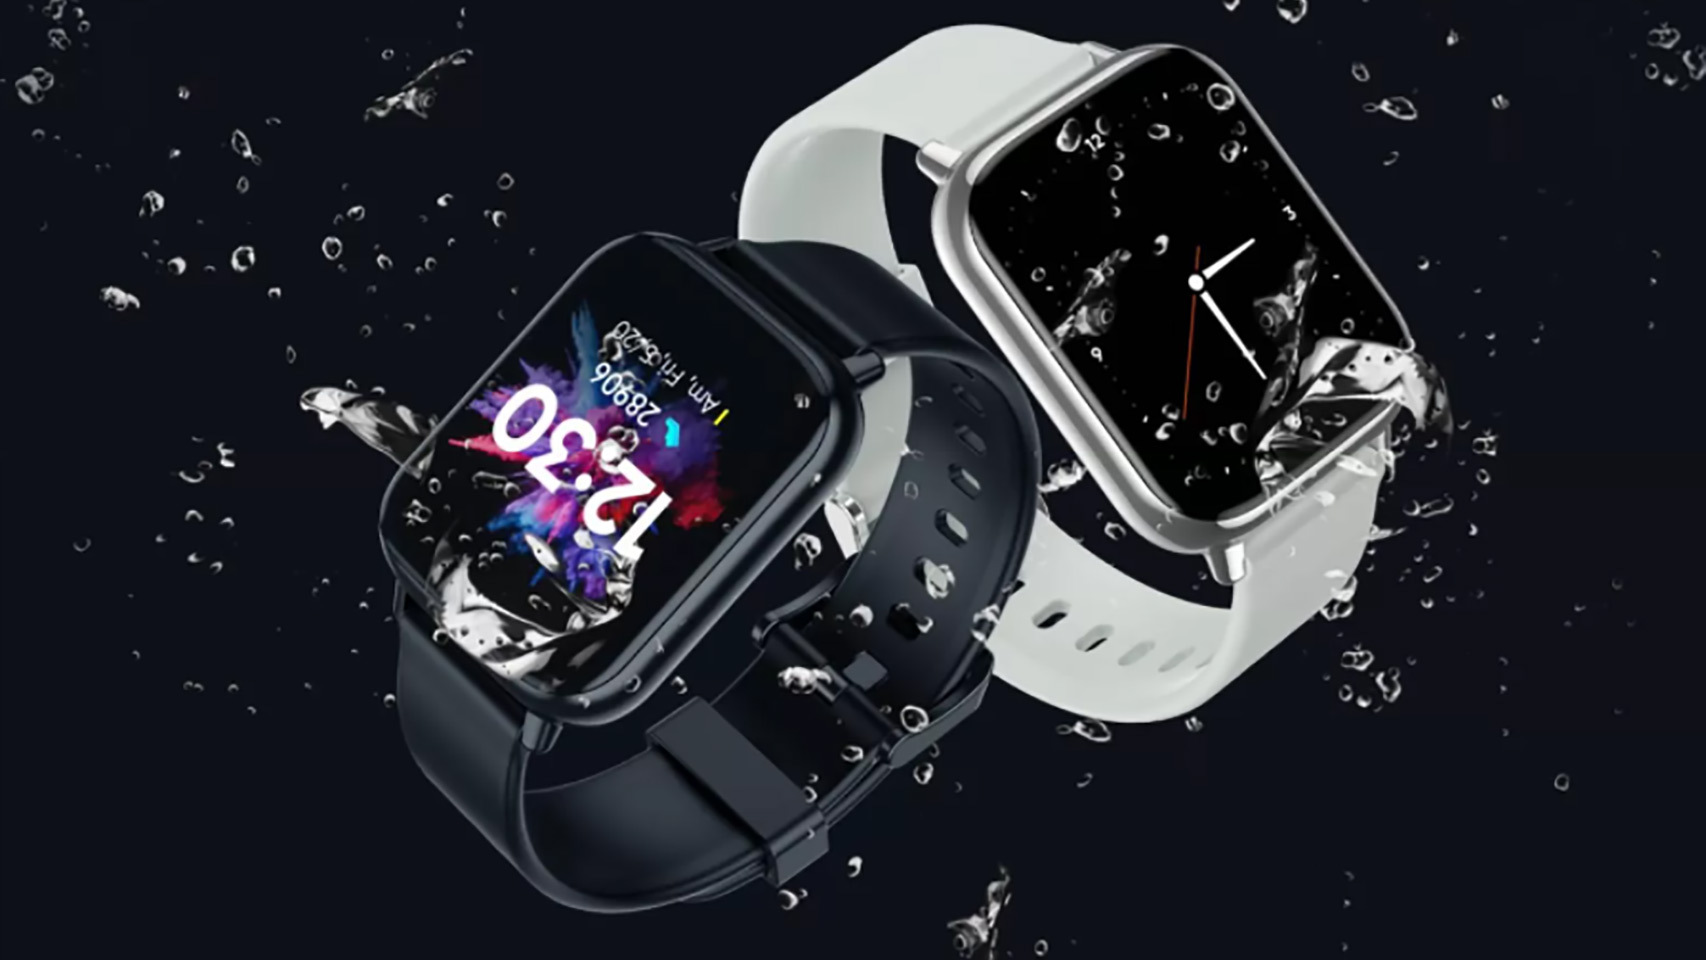 Los dos nuevos smartwatches: el Dizo Watch 2 y Dizo Watch Pro